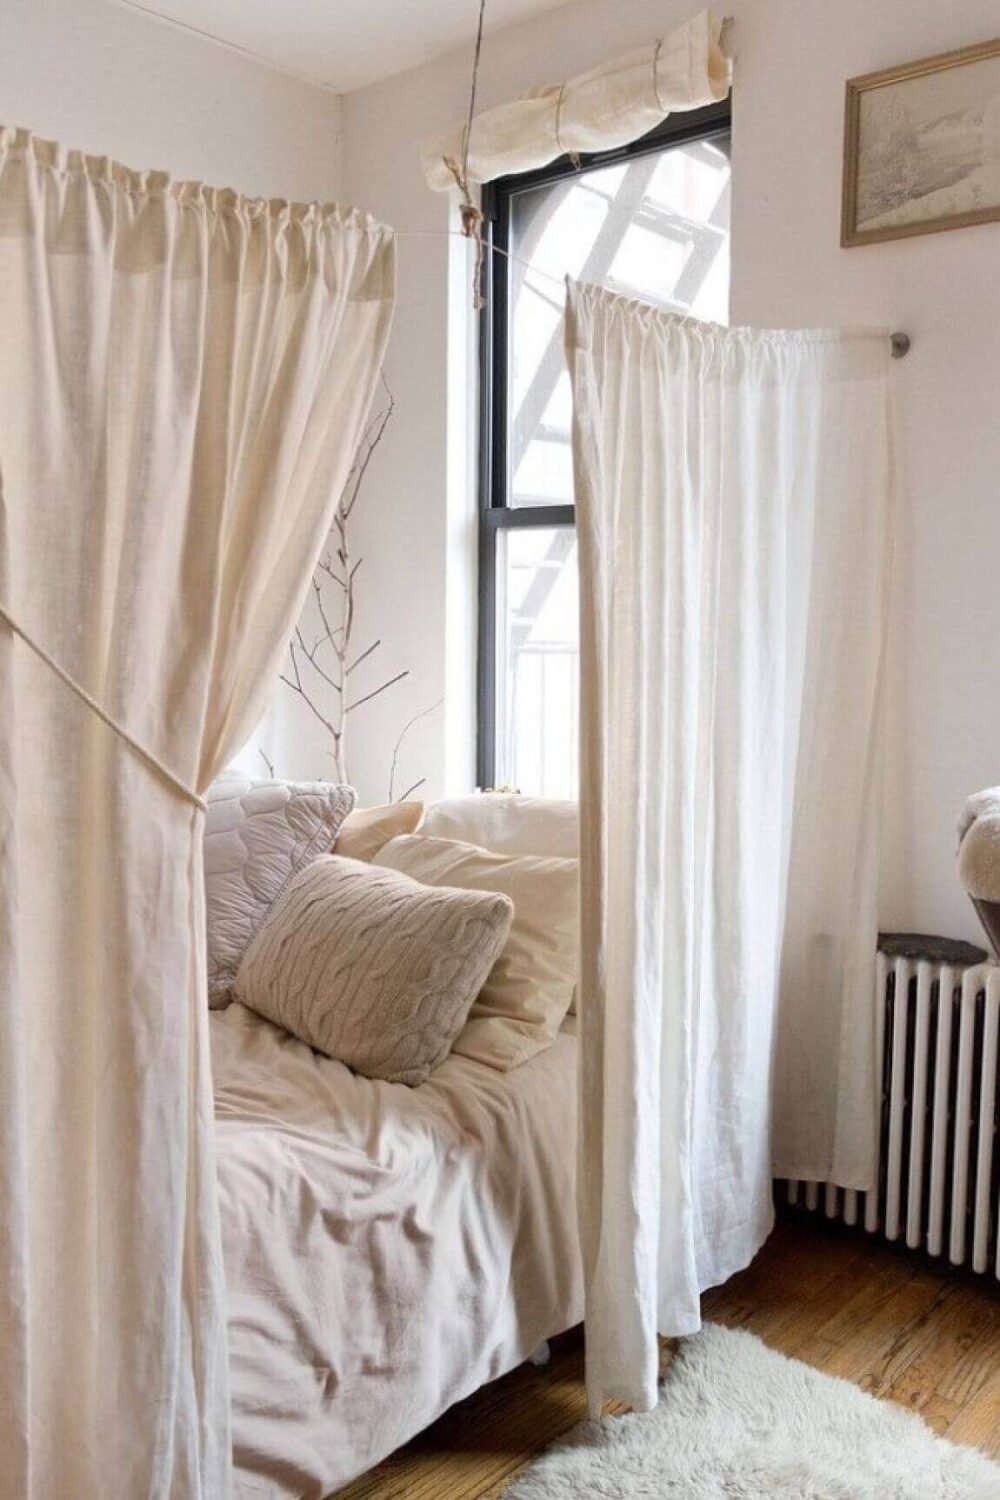 curtain-room-divider-dorm-room-ideas-nordroom